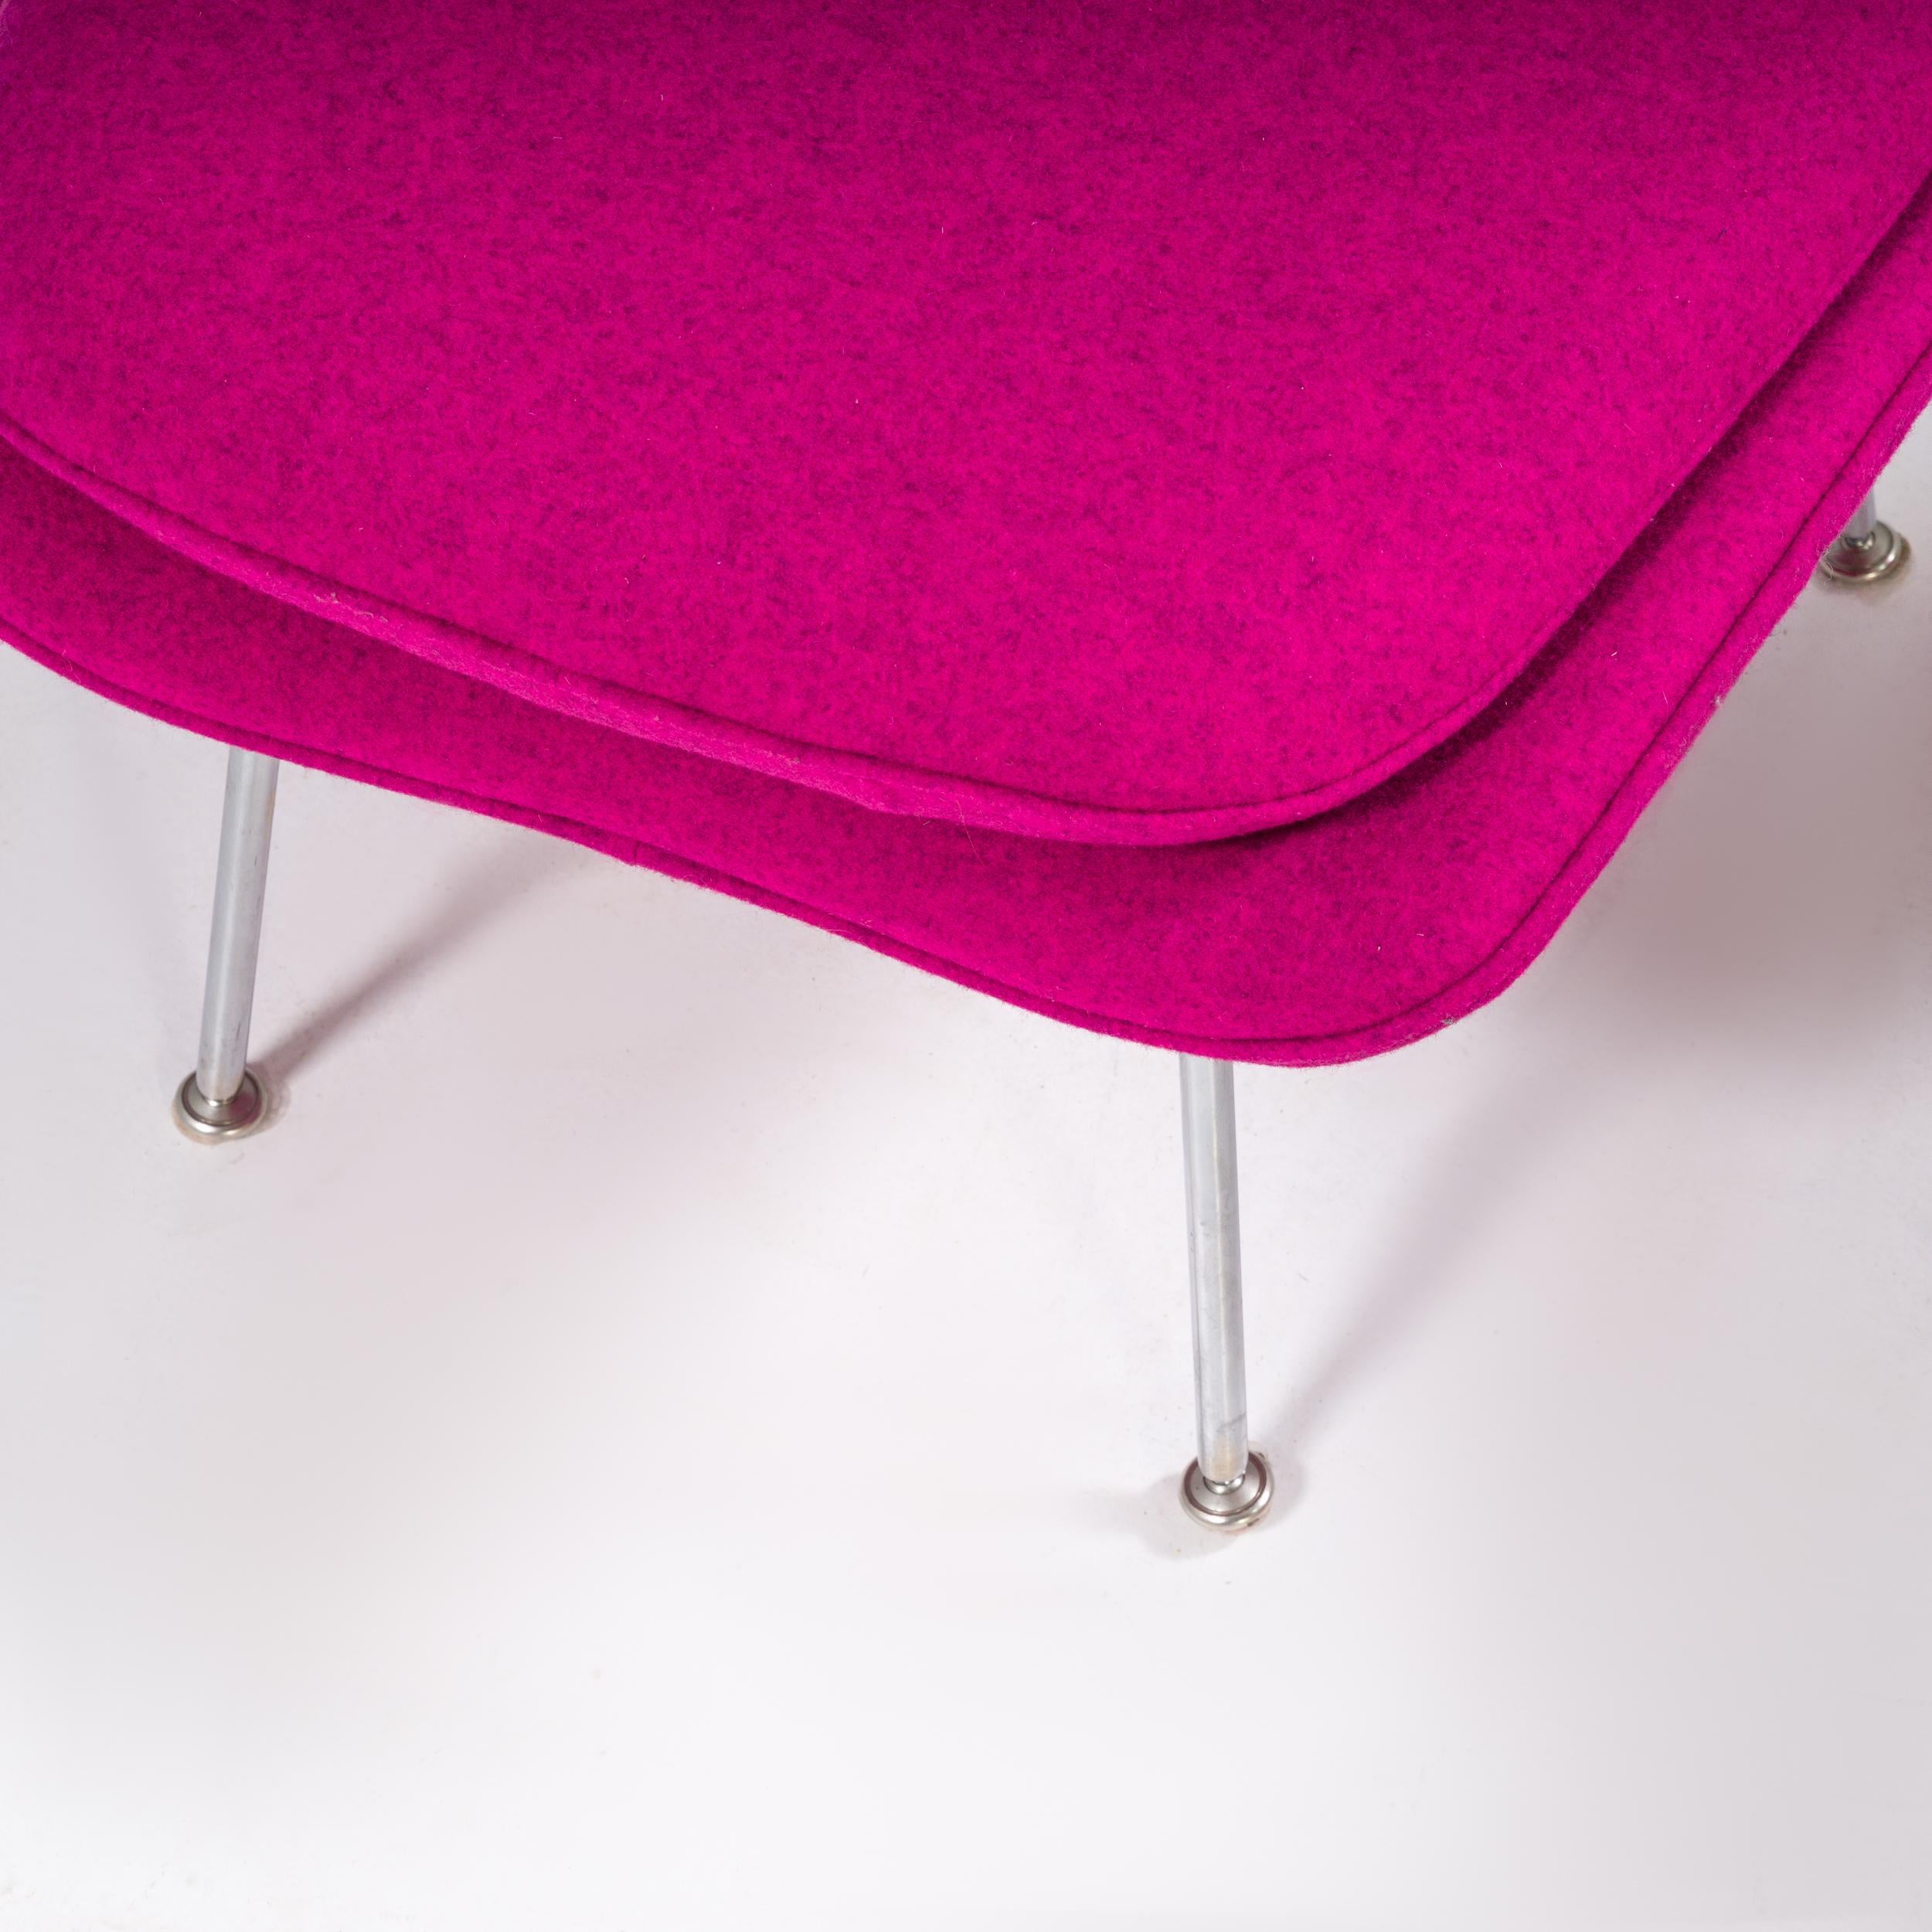 Knoll by Eero Saarinen Womb Purple Armchair and Footstool 1